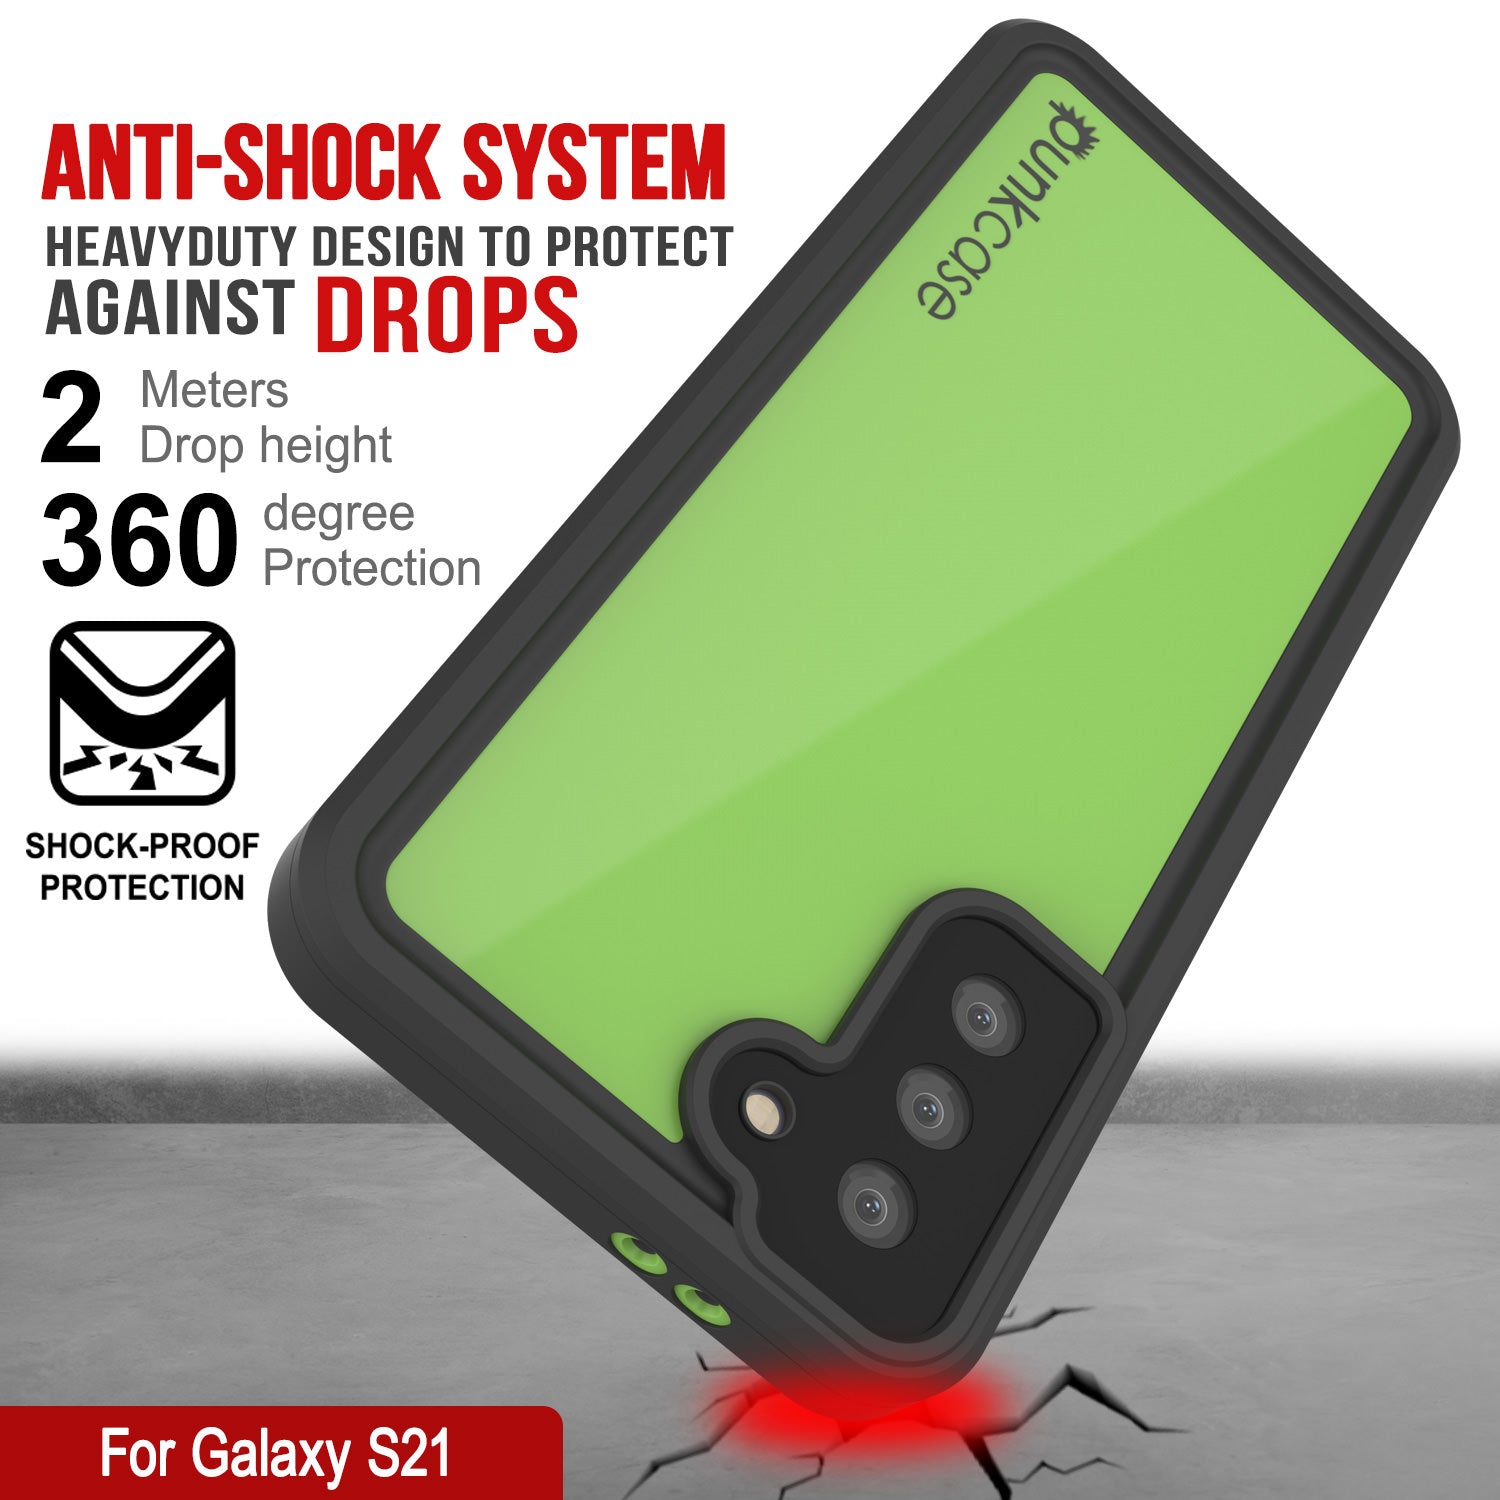 Galaxy S20 Ultra Waterproof Case PunkCase StudStar Light Green